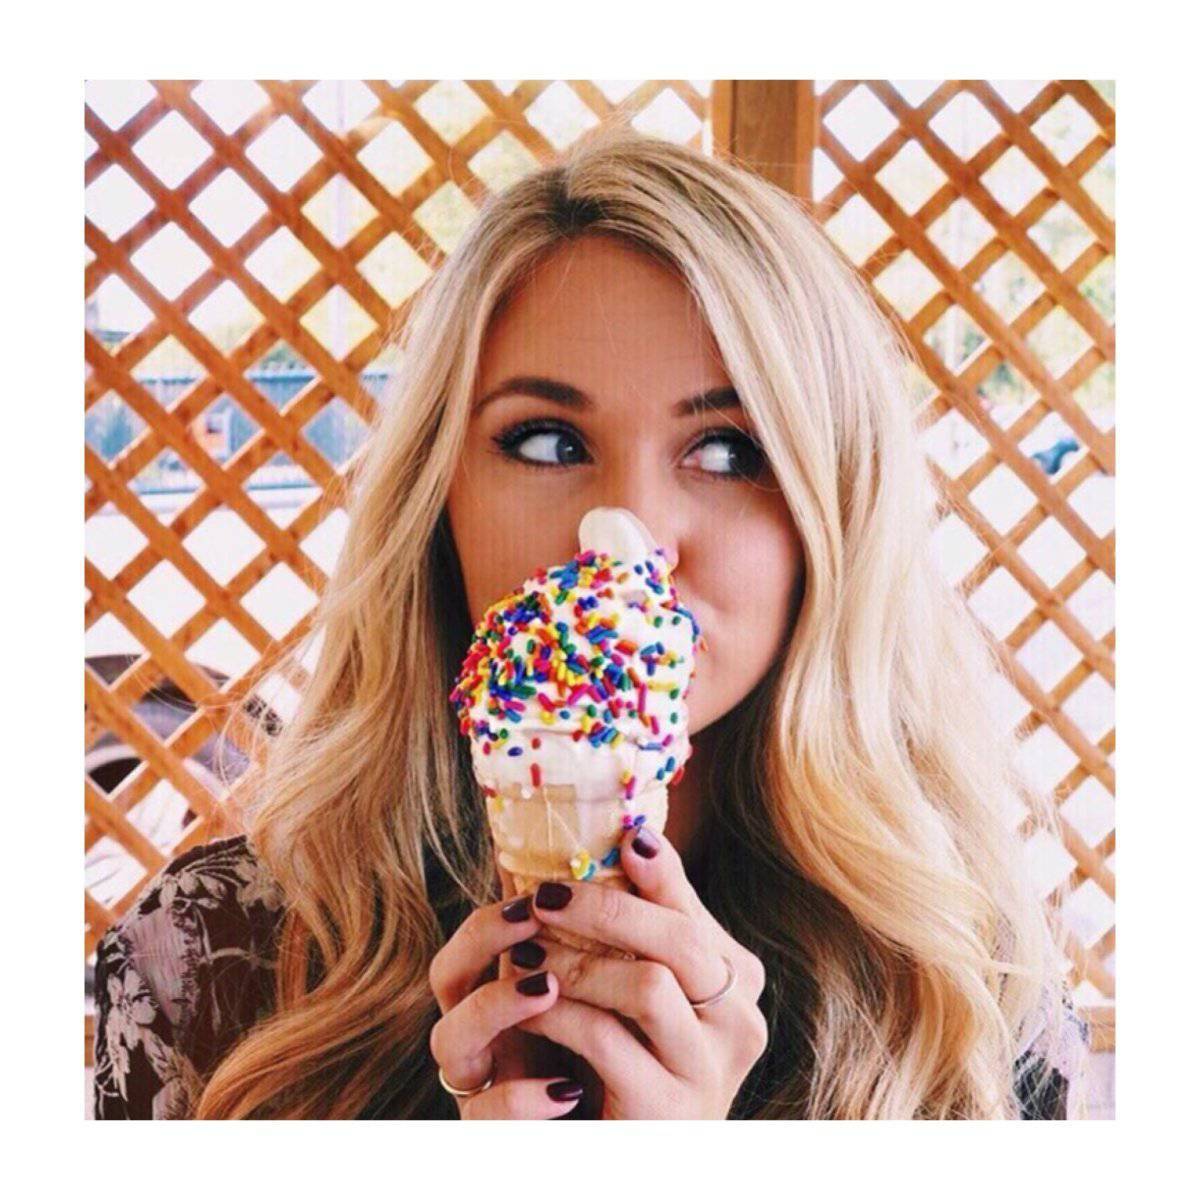 Найти фото в инстаграмме. Девушка с мороженым. Красивая девушка с мороженым. Фотосессия с мороженым. Красивое мороженое.